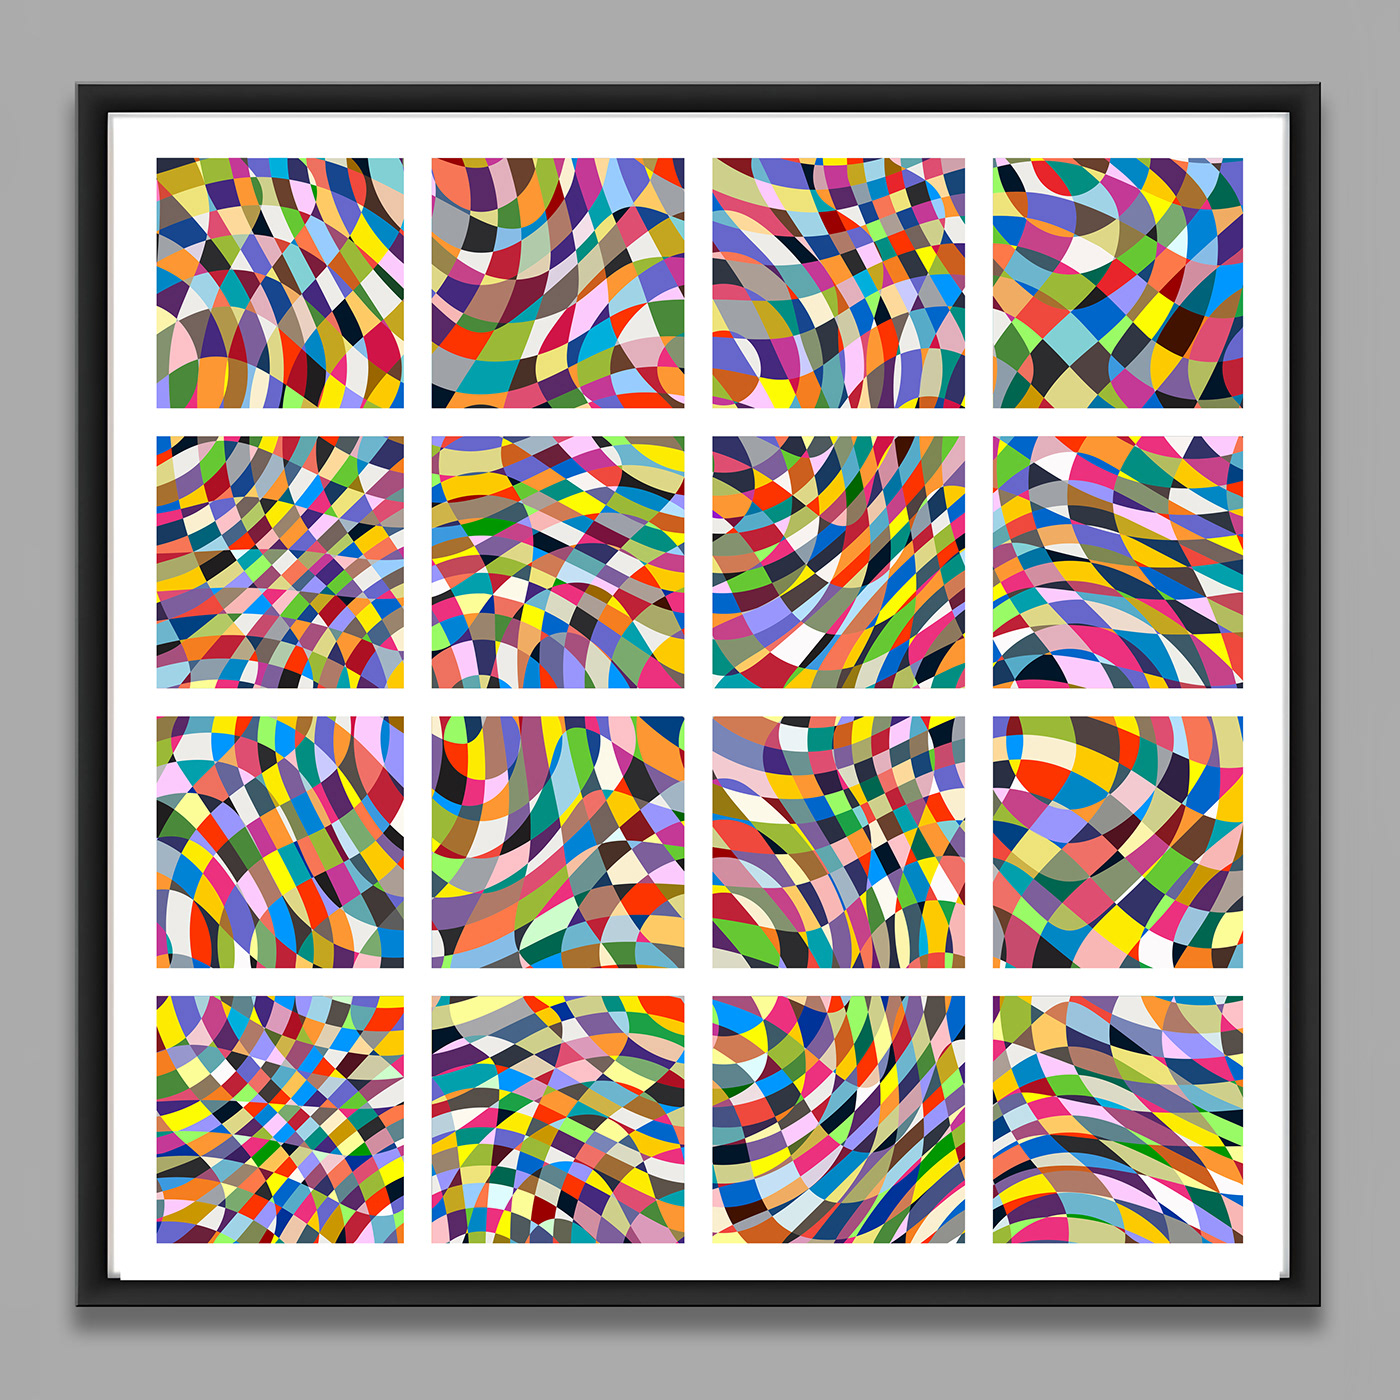 Tom Sawyer Abstract Art pattern art color design mot-art screenprint acrylic on canvas Textiles 장난감